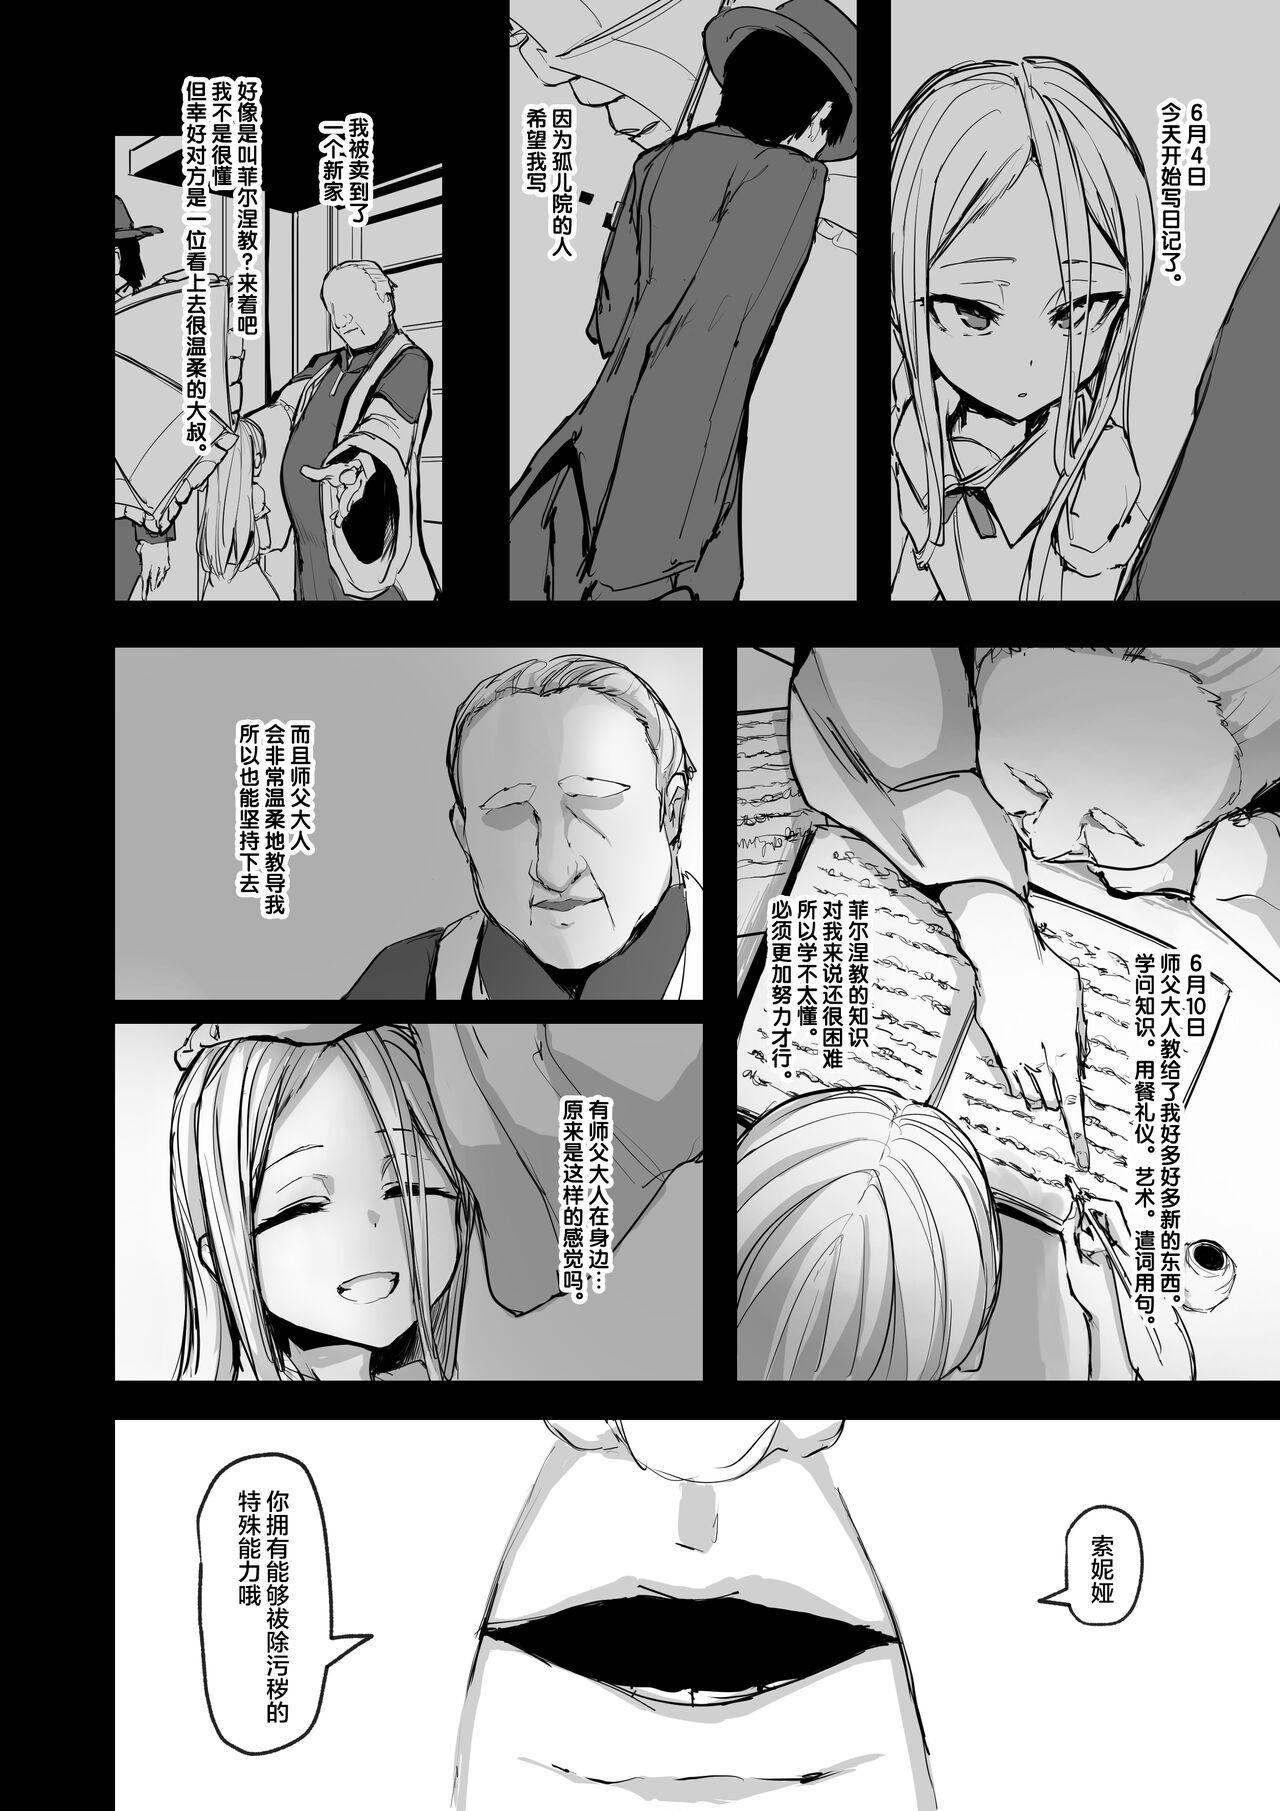 Argenta Heartless 1: Kate no Hanashi + If + Enzero Jii Manga - Original Spanish - Page 4